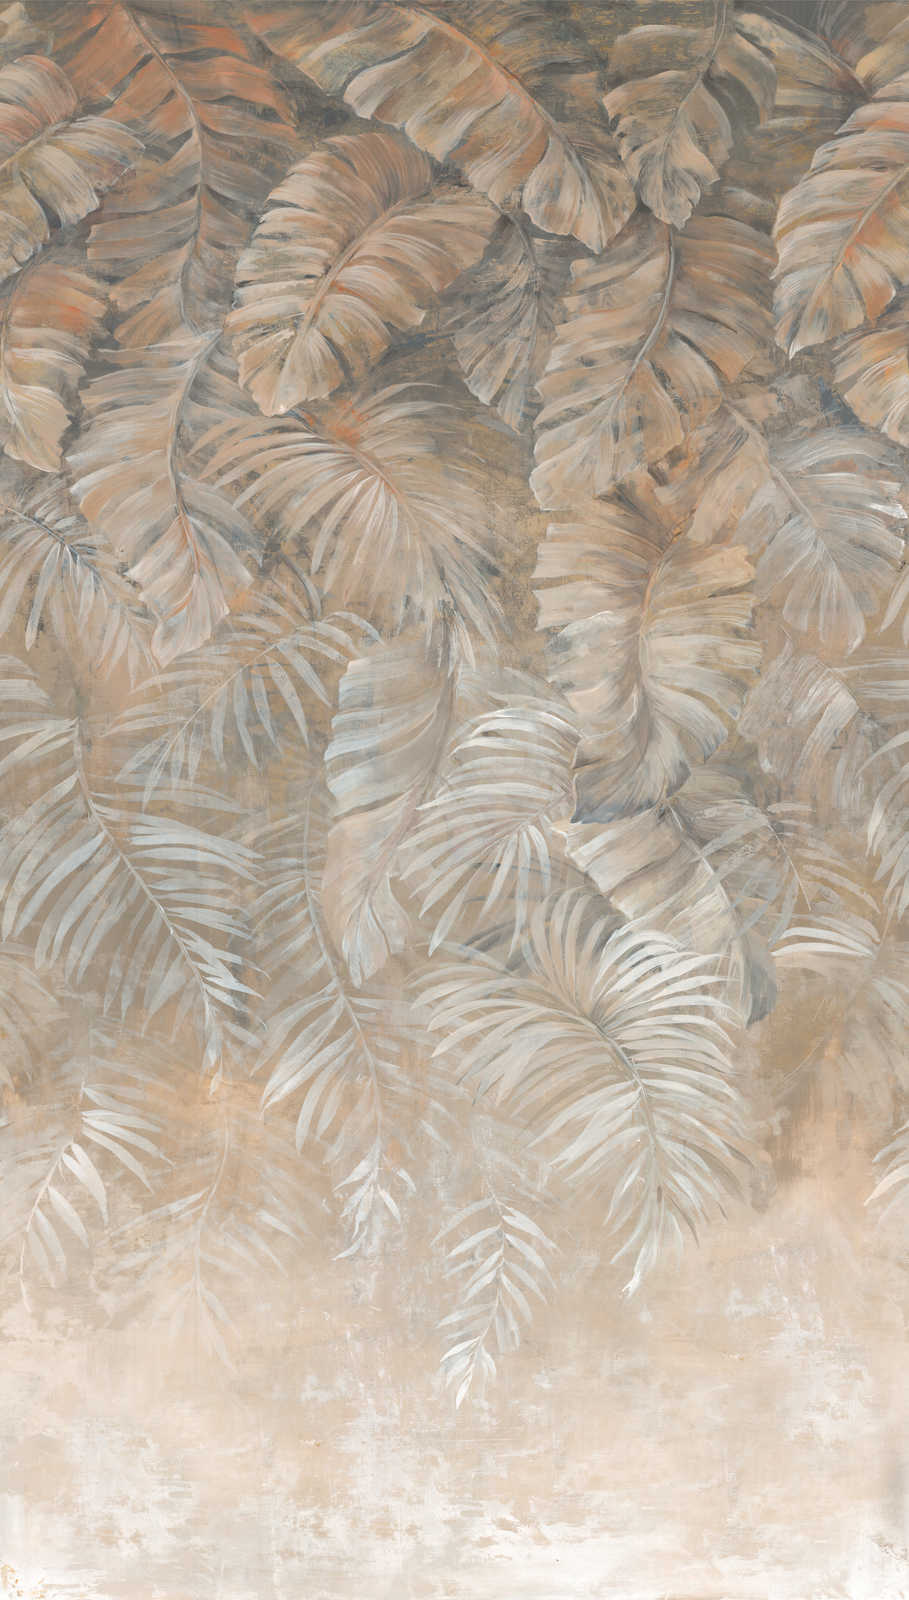             Grand papier peint feuilles de palmier dans des tons de terre subtils - marron, beige, crème
        